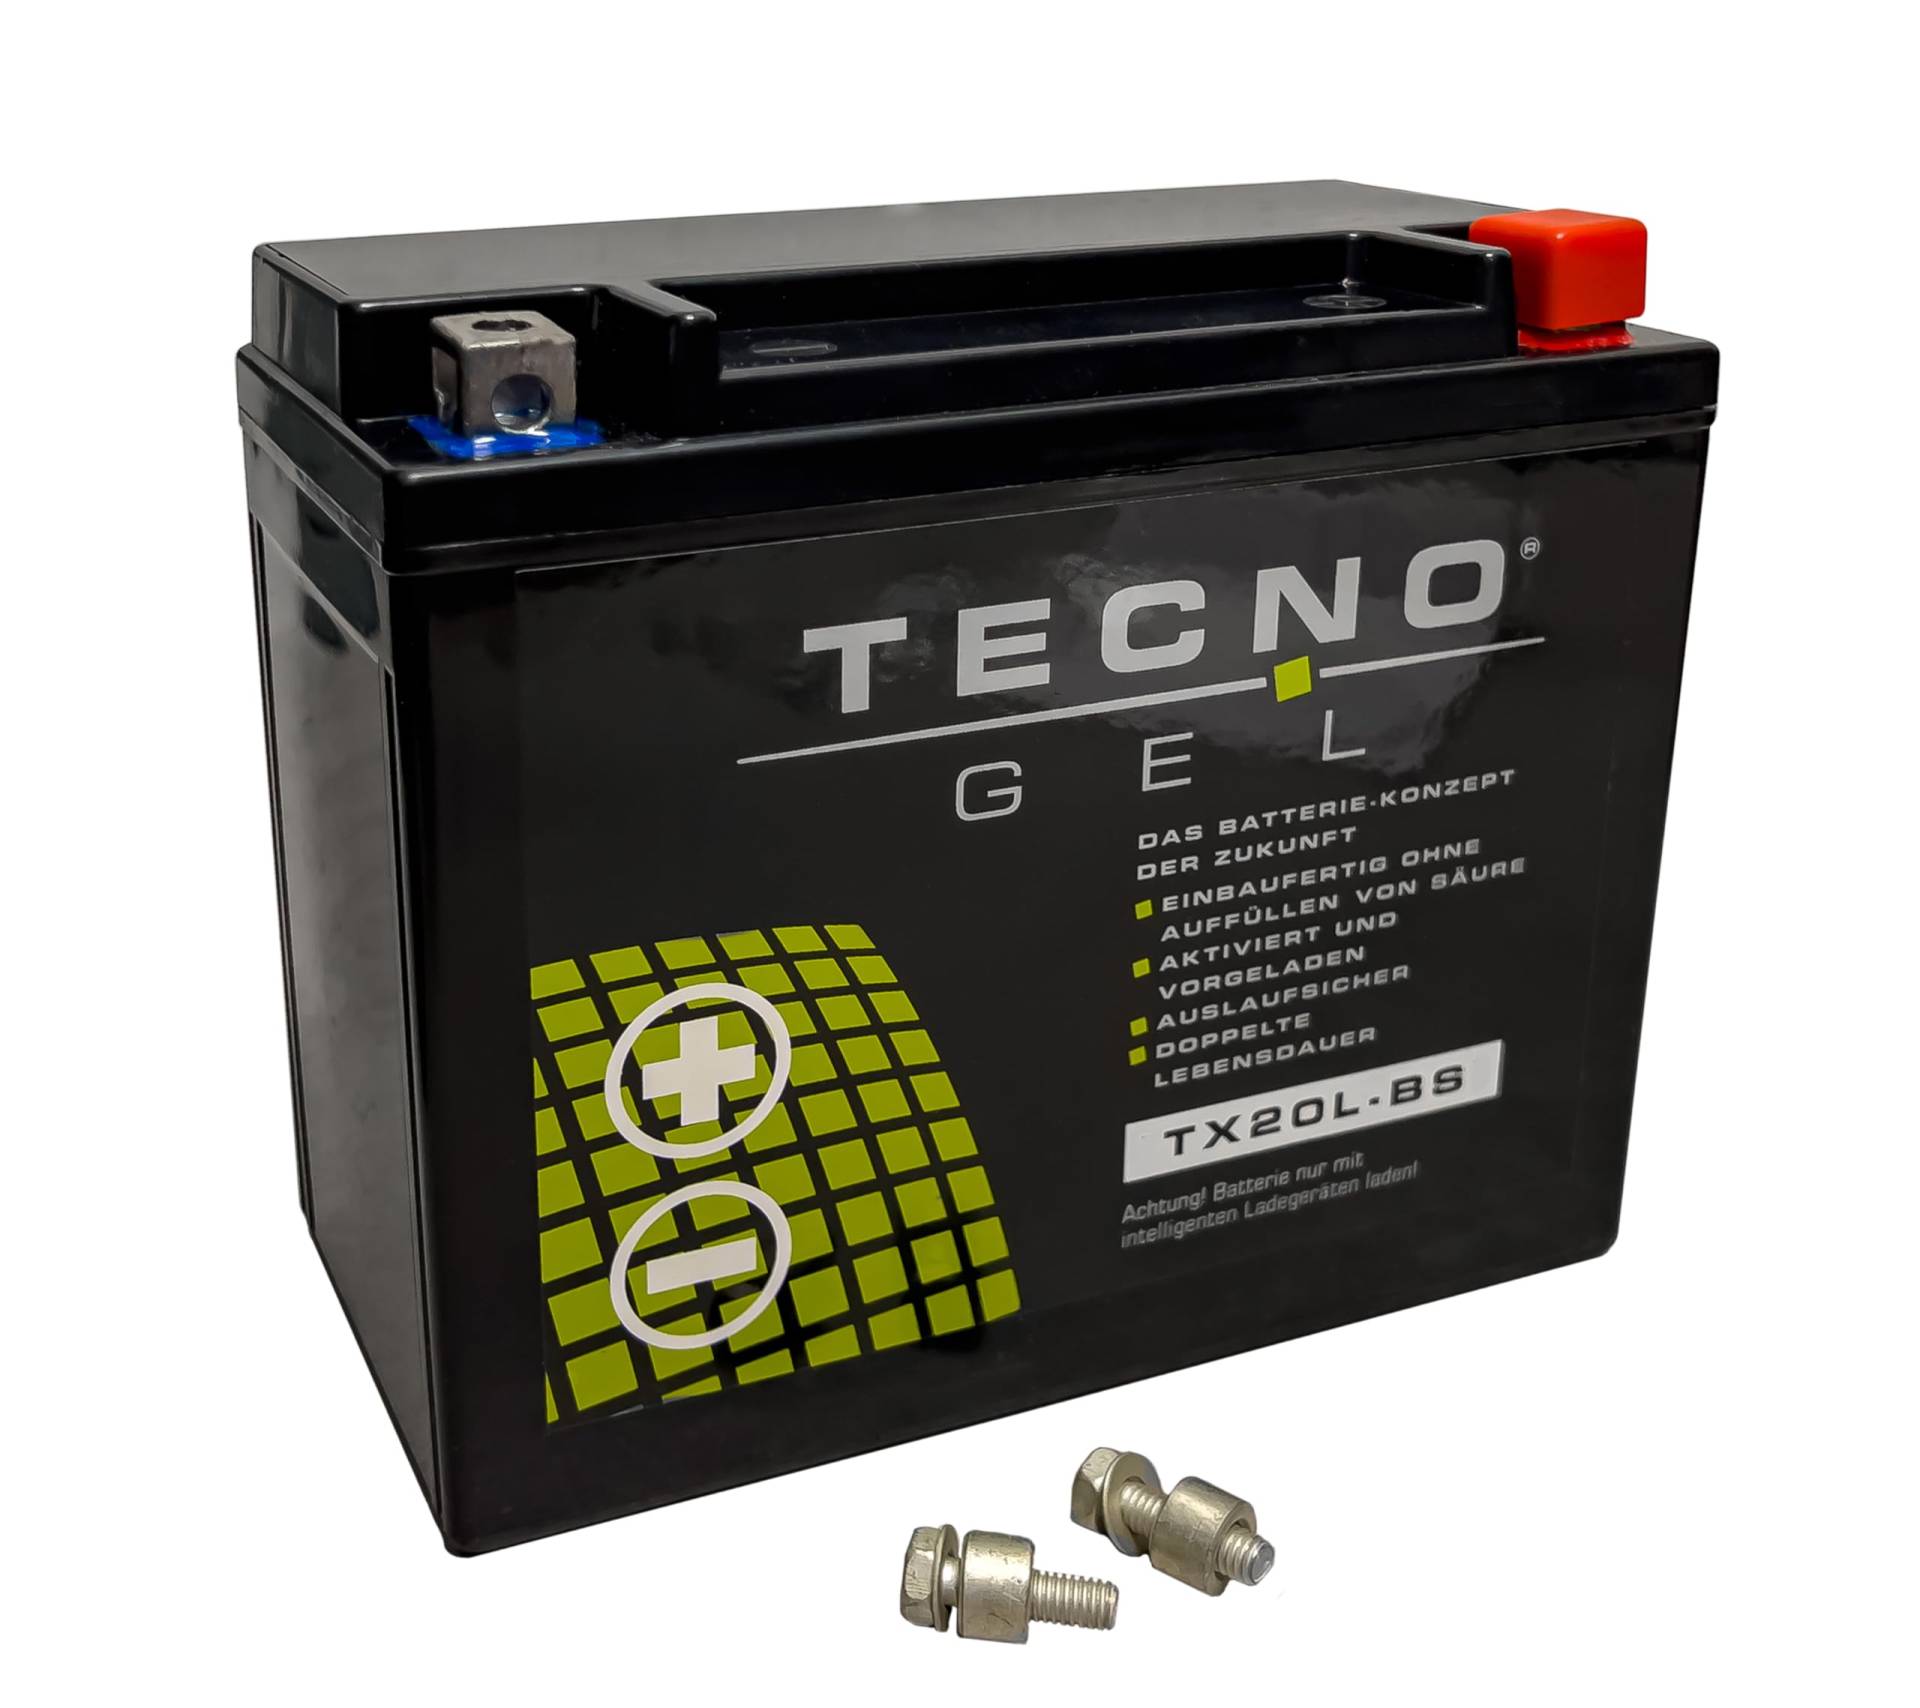 TECNO-GEL Motorrad-Batterie für YTX20L-BS für HARLEY DAVIDSON VRSC... 1130/1250 V-Rod 2007-2017, 12V Gel-Batterie 20Ah (DIN 82000), 175x87x155 mm von Wirth-Federn